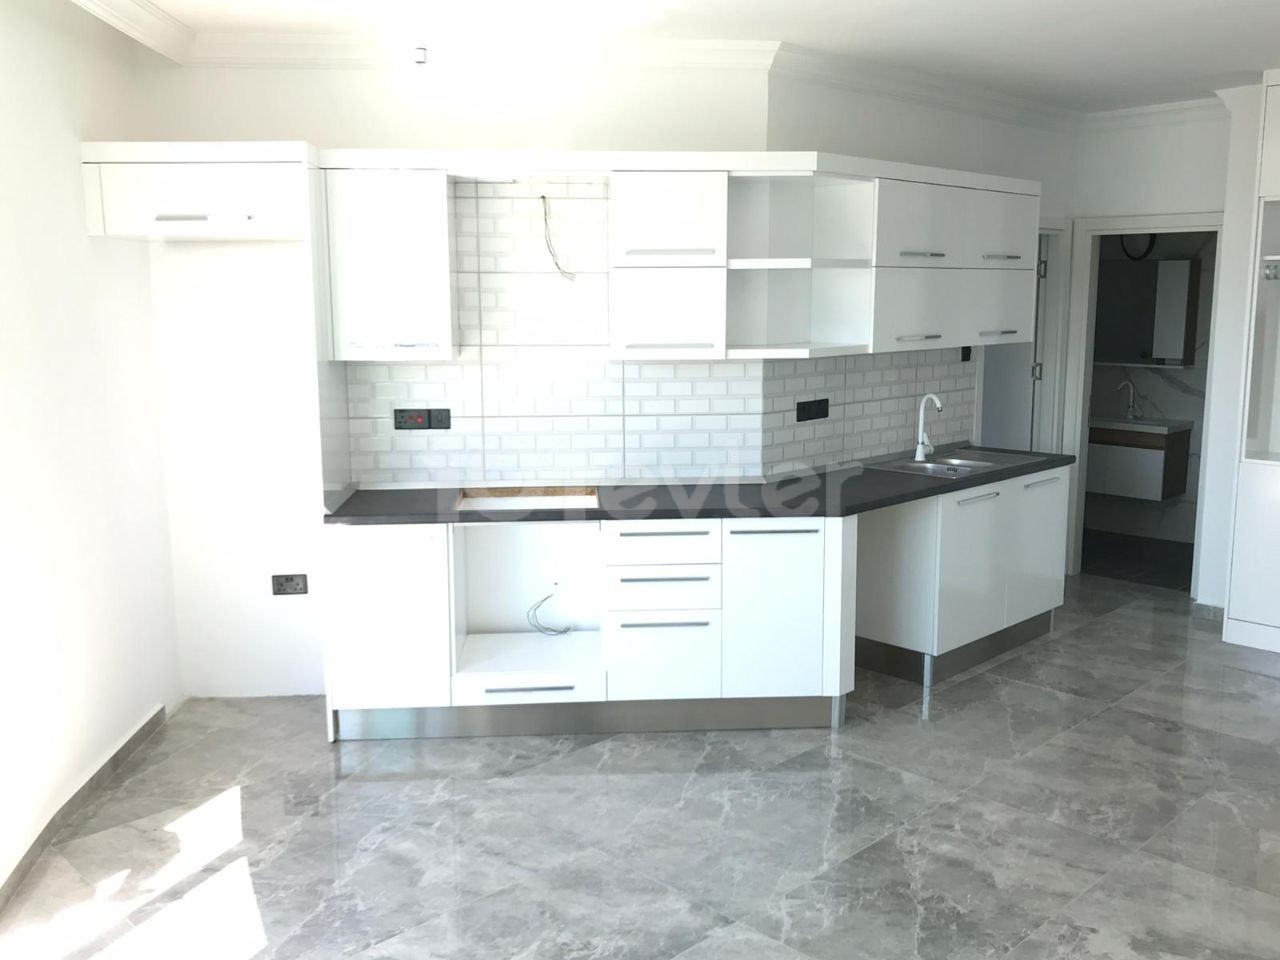 Недавно законченные 4 квартиры 1+1 для продажи в районе Кирения Караогланоглу ** 